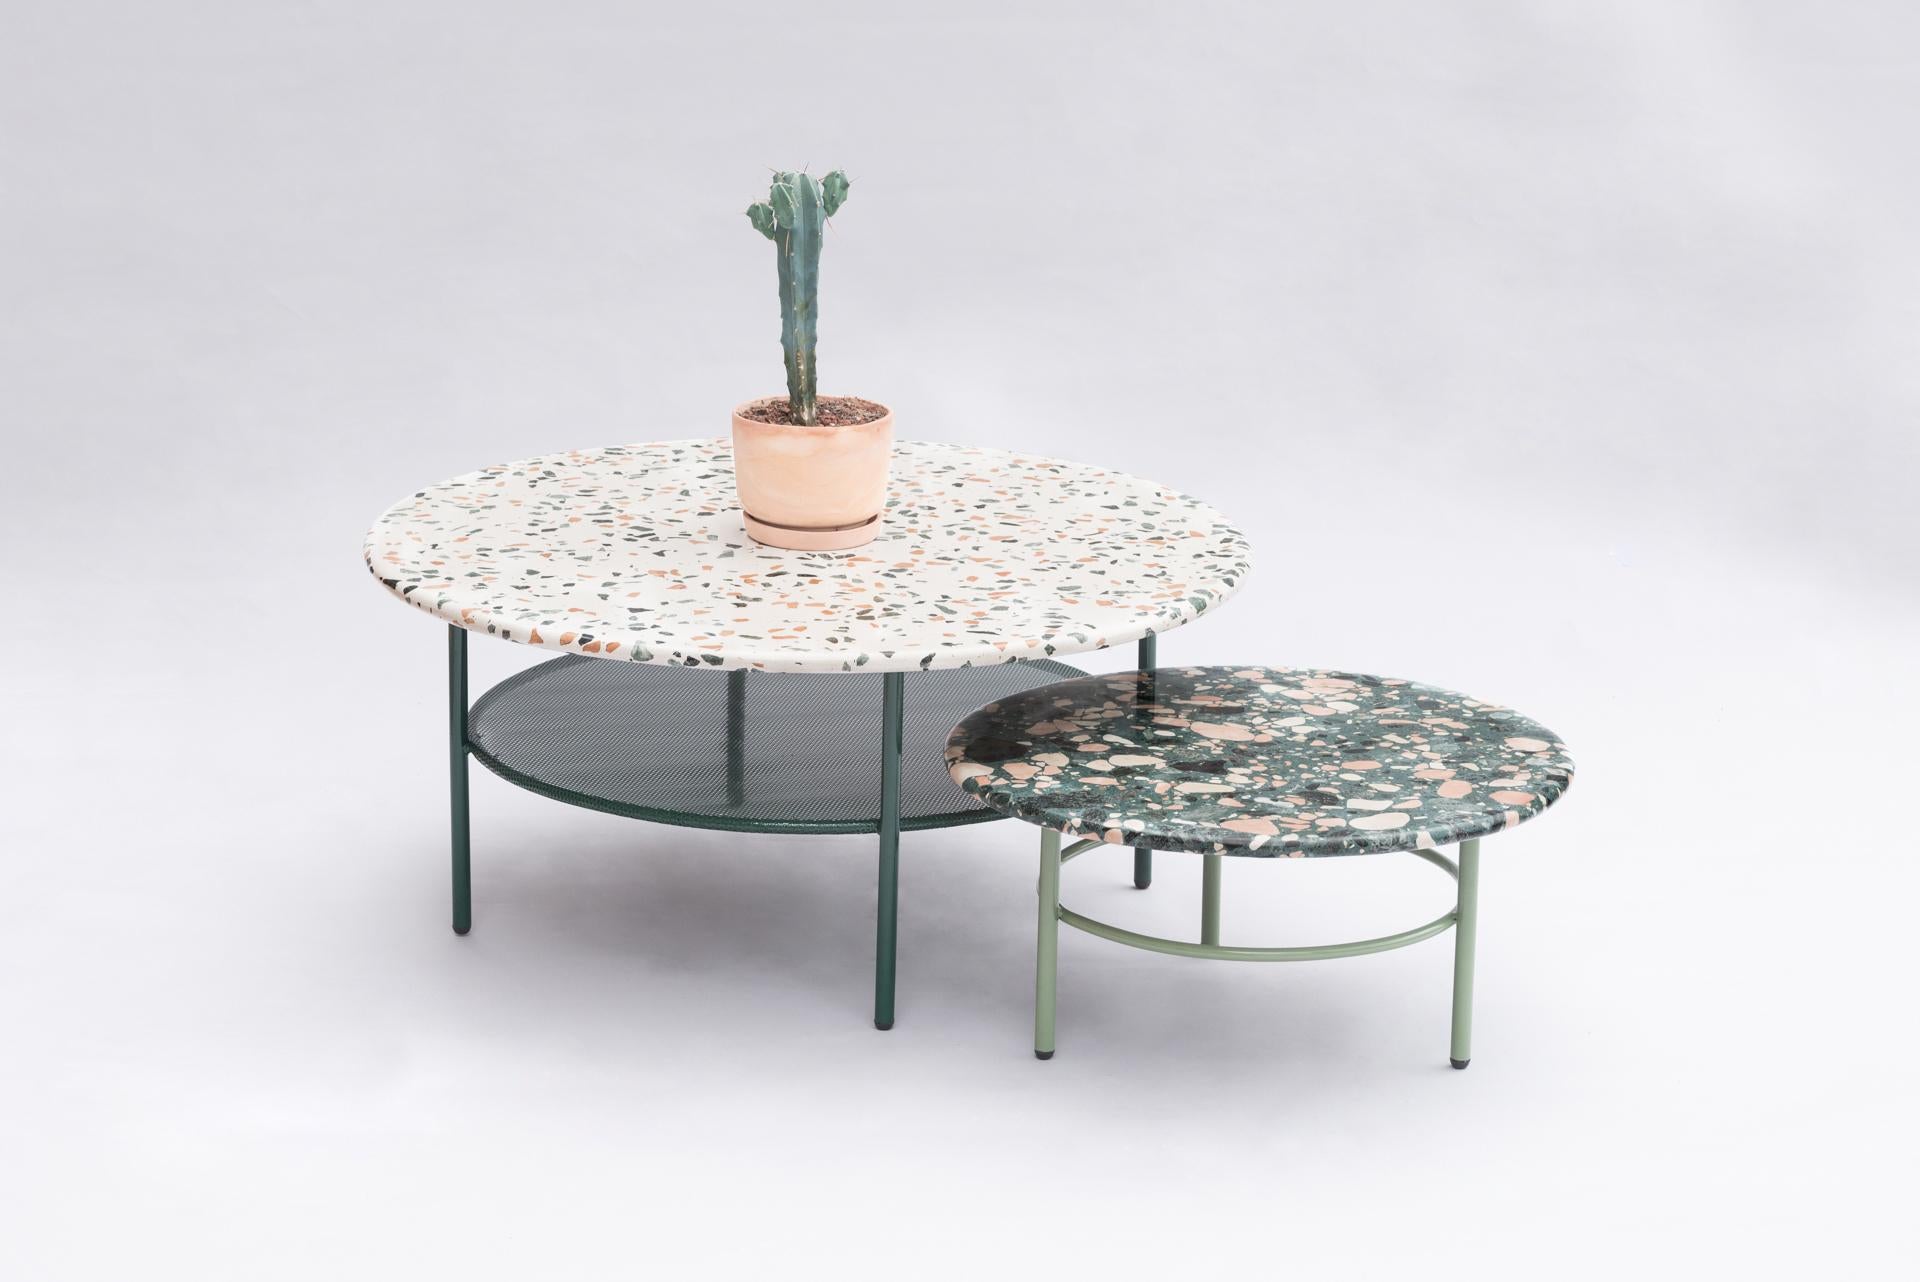 Lira Coffee Table with Terrazzo, Contemporary Mexican Design 1